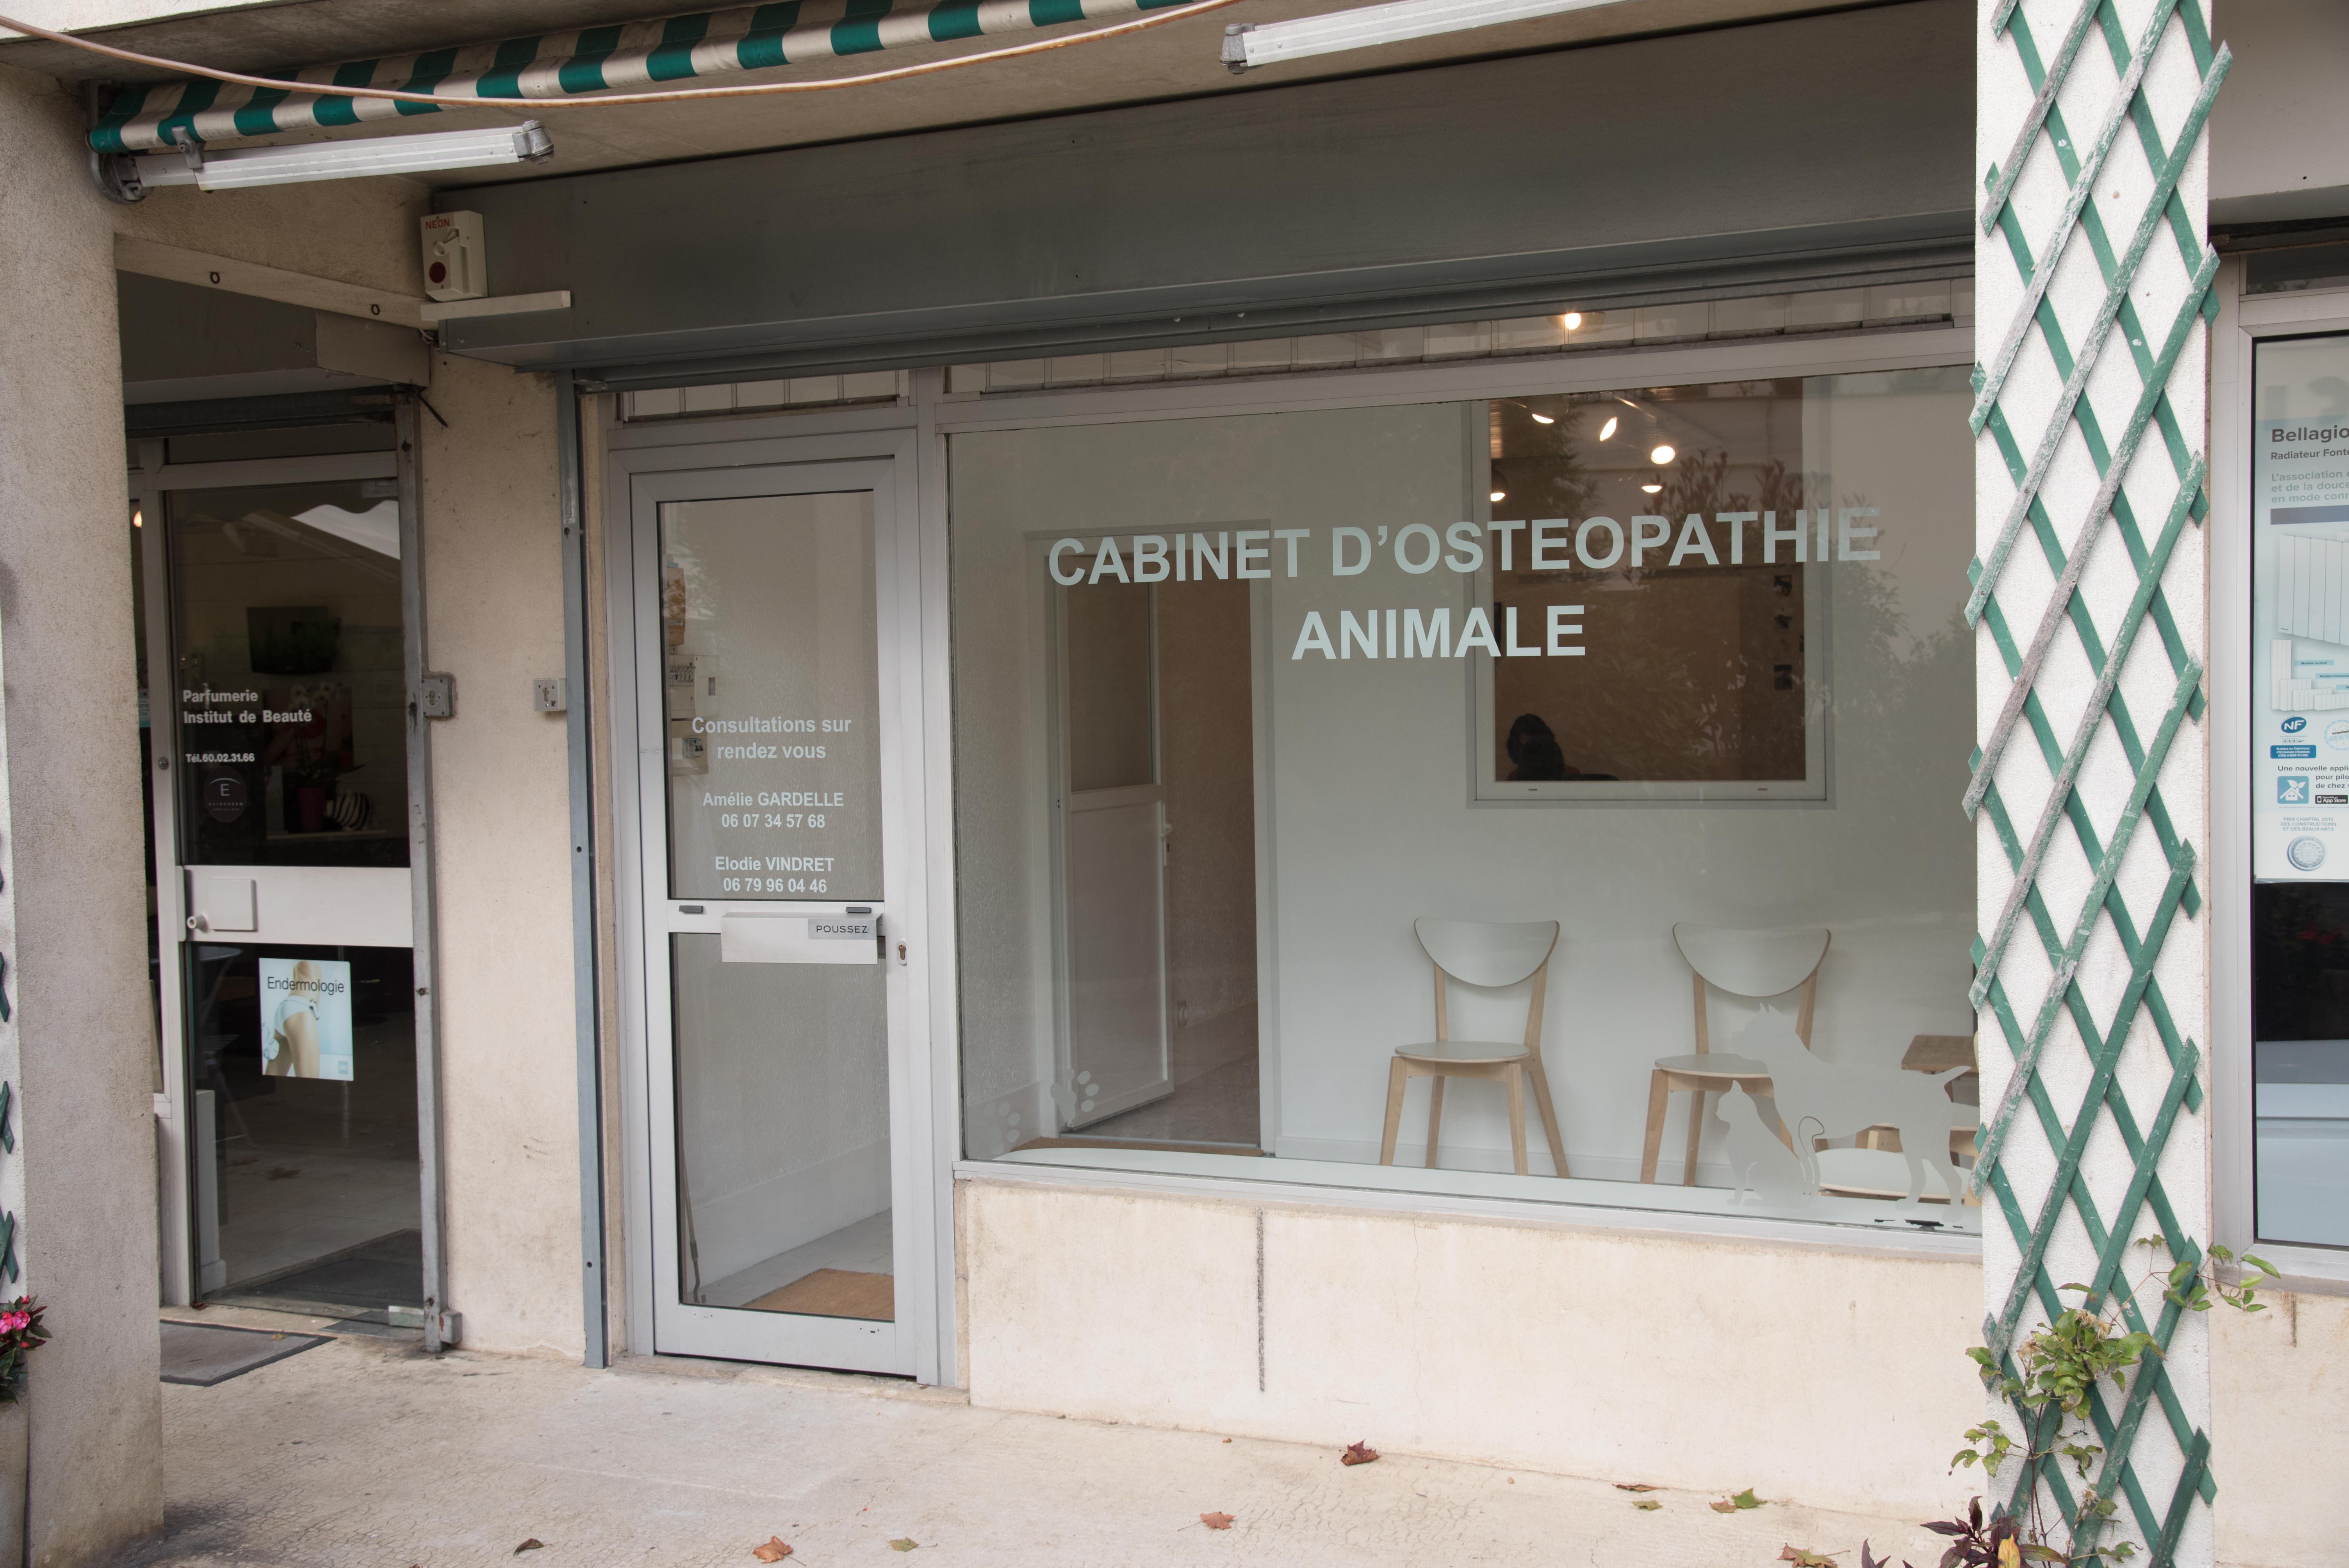 Le cabinet d'ostéopathie animale d'Amélie Gardelle